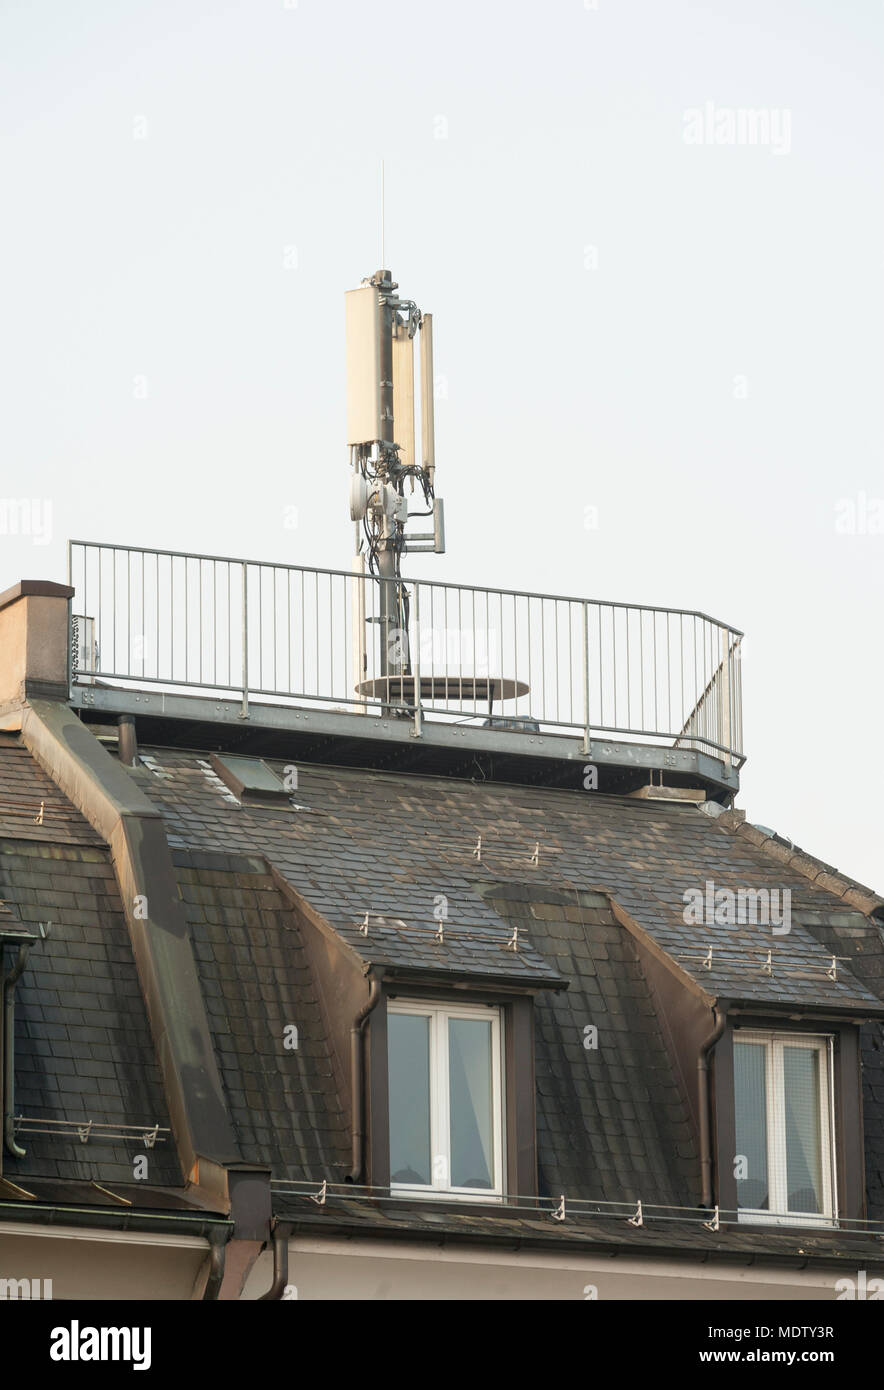 Zurich, Suisse - 7 mars 2014 : l'antenne de téléphone mobile au-dessus d'un immeuble dans un quartier résidentiel de Zurich, Suisse. Les scientifiques ont averti ab Banque D'Images